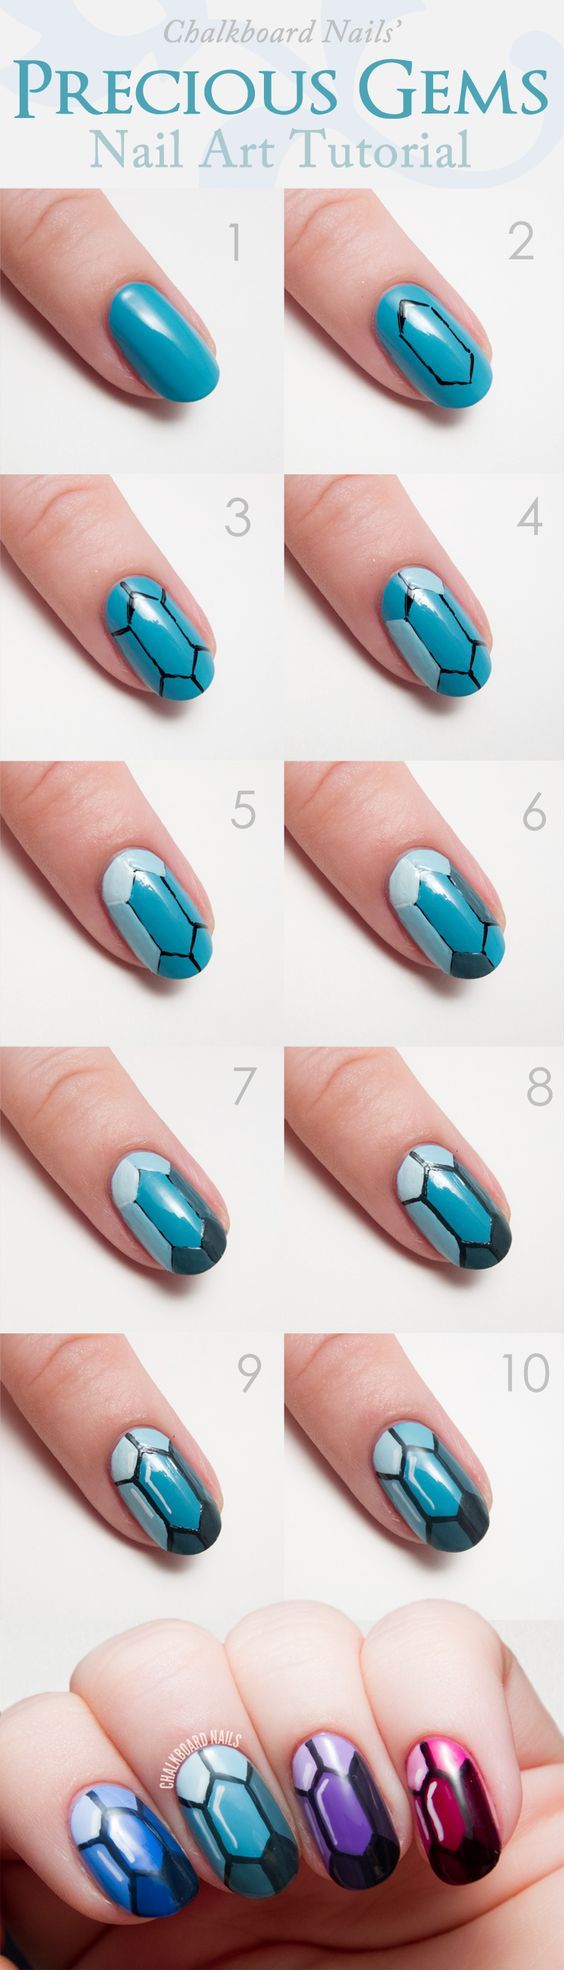 Precious gems nail art tutorials